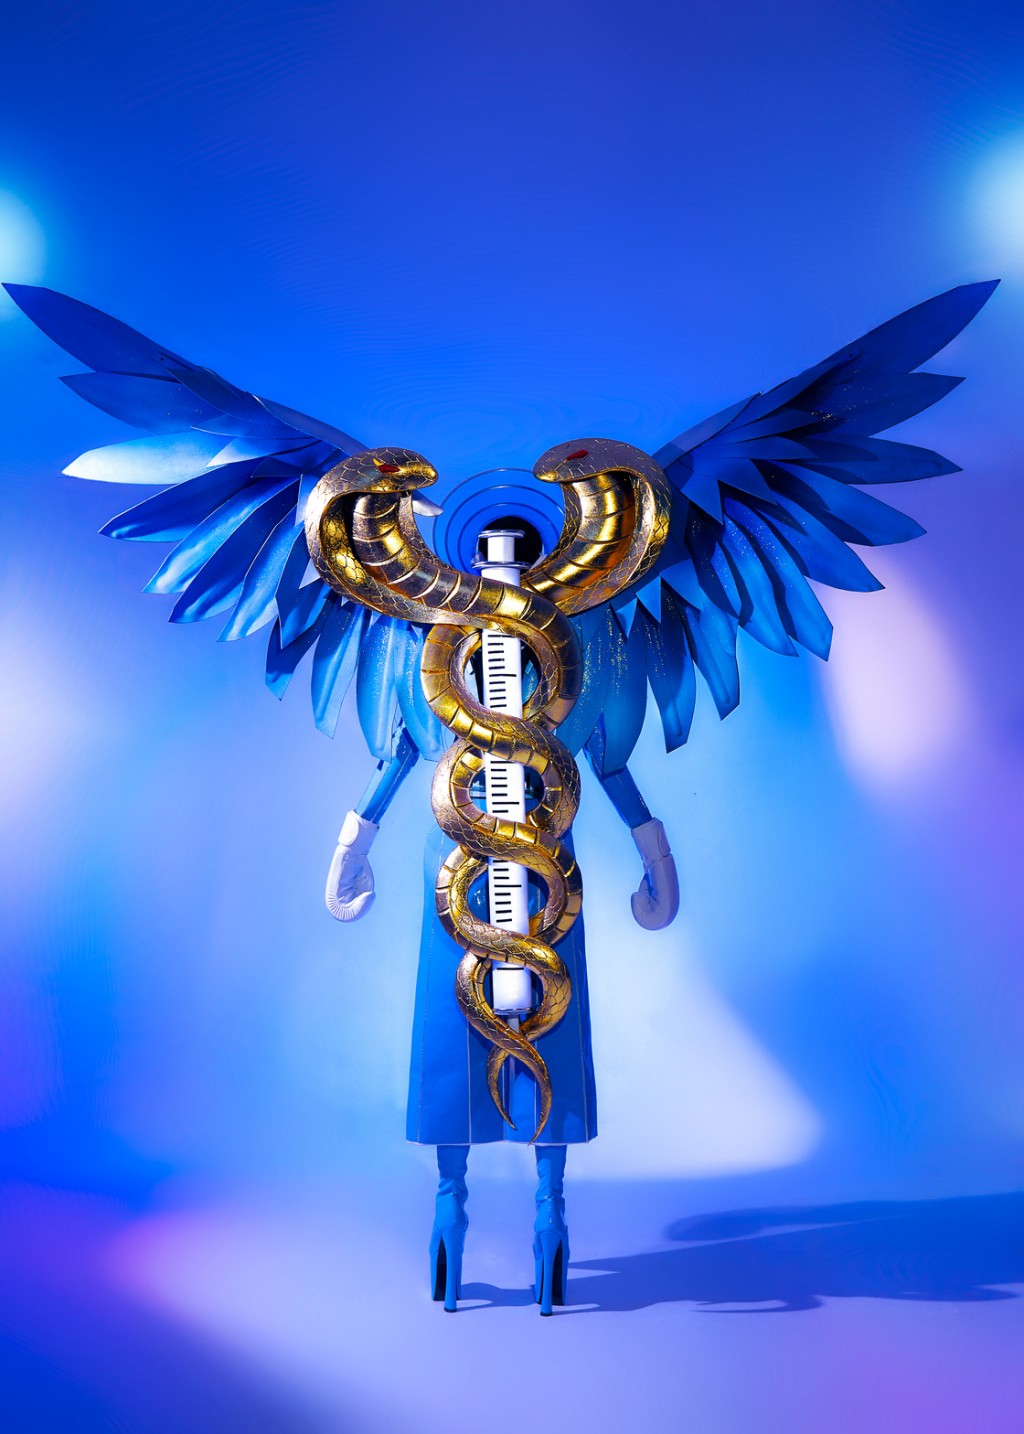 Thùy Tiên hé lộ quốc phục ngợi ca các “thiên thần áo xanh” trong mùa dịch